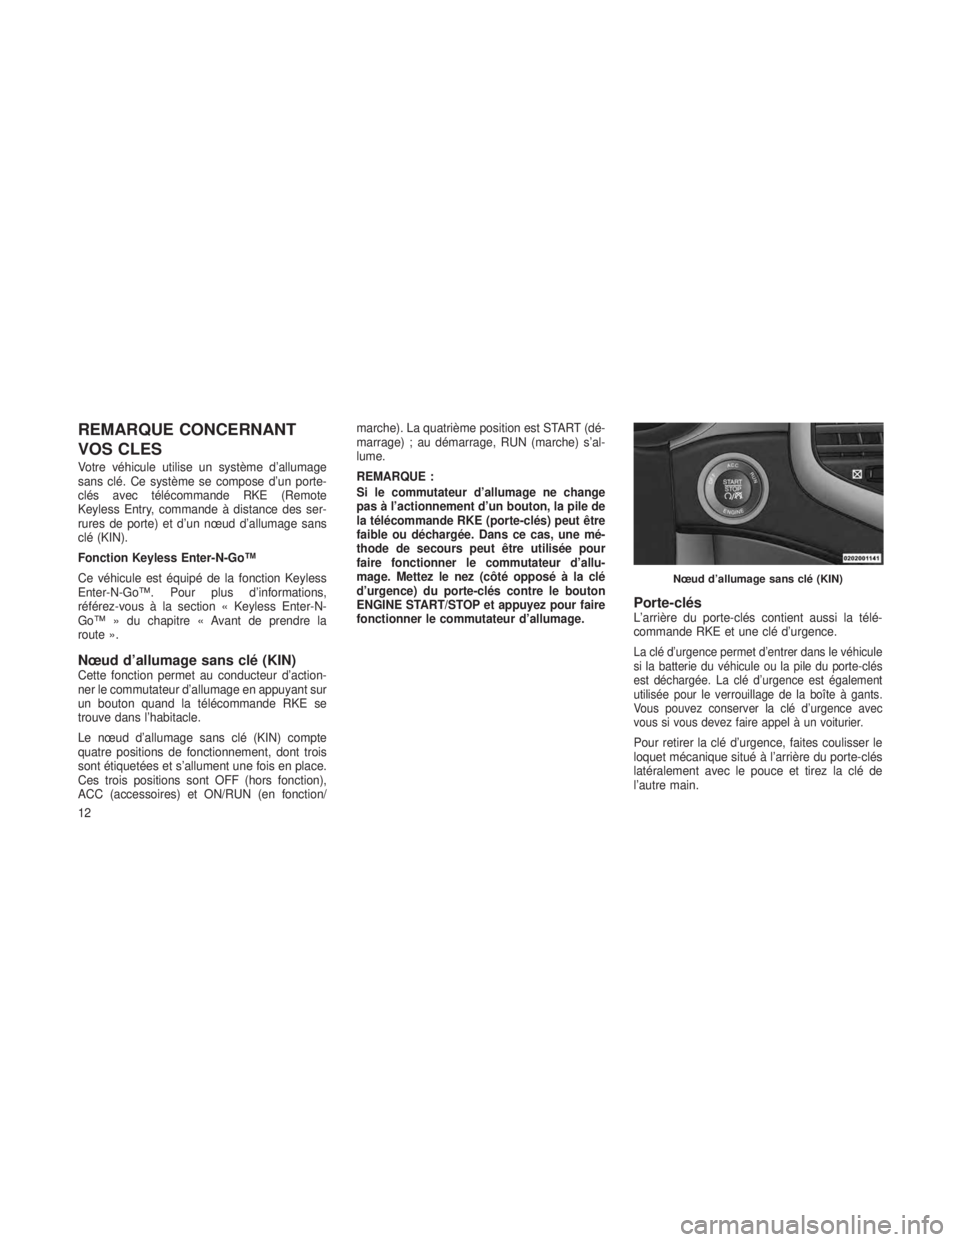 JEEP GRAND CHEROKEE 2013  Notice dentretien (in French) REMARQUE CONCERNANT
VOS CLES
Votre véhicule utilise un système d’allumage
sans clé. Ce système se compose d’un porte-
clés avec télécommande RKE (Remote
Keyless Entry, commande à distance 